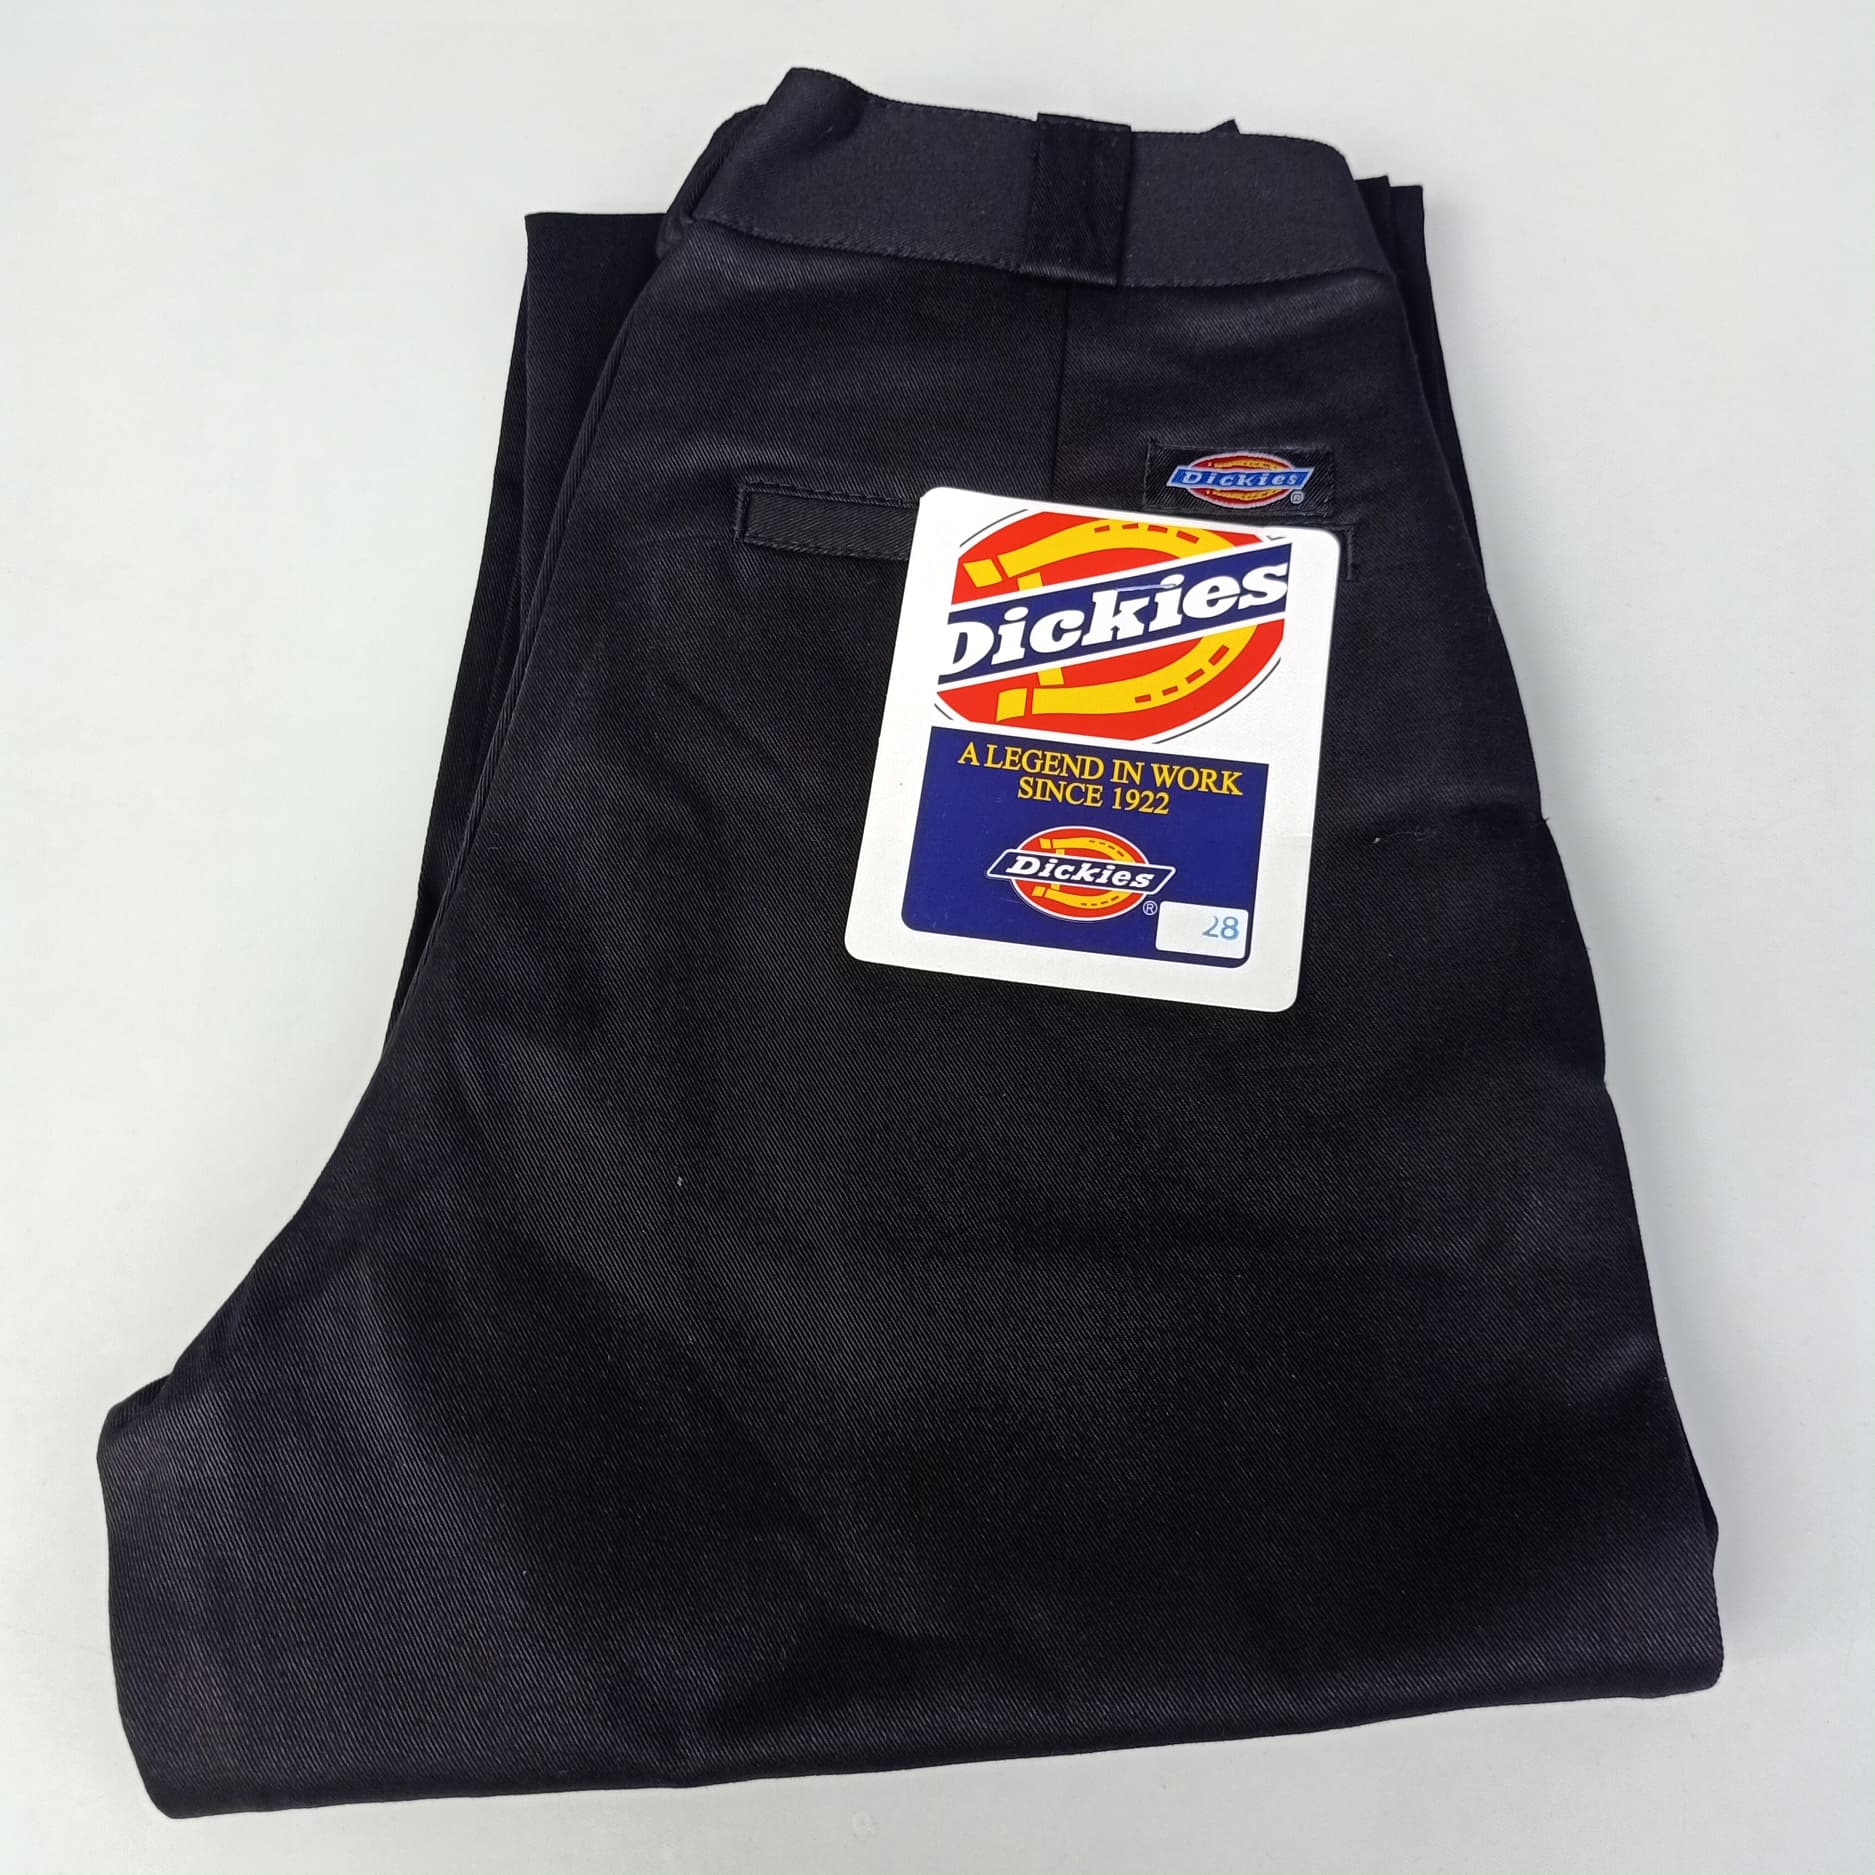 กางเกง Dickies ดิกกี้  สีดำ & สีกรม ขากระบอก4กระเป๋า ยอดฮิตตลอดกาล ผ้าchino เวสปอยด์